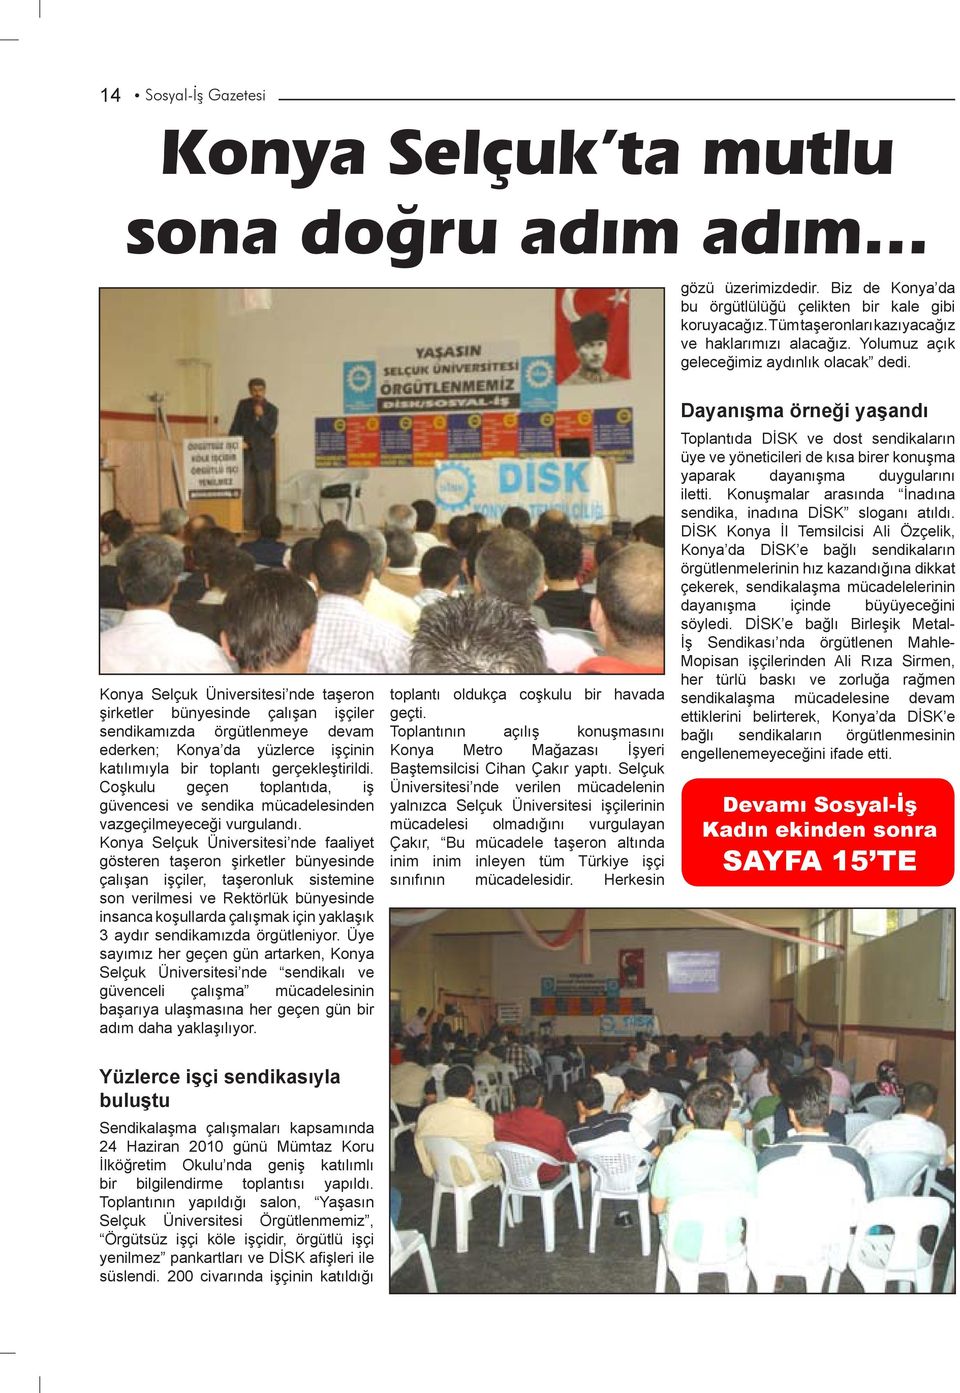 Konya Selçuk Üniversitesi nde taşeron şirketler bünyesinde çalışan işçiler sendikamızda örgütlenmeye devam ederken; Konya da yüzlerce işçinin katılımıyla bir toplantı gerçekleştirildi.